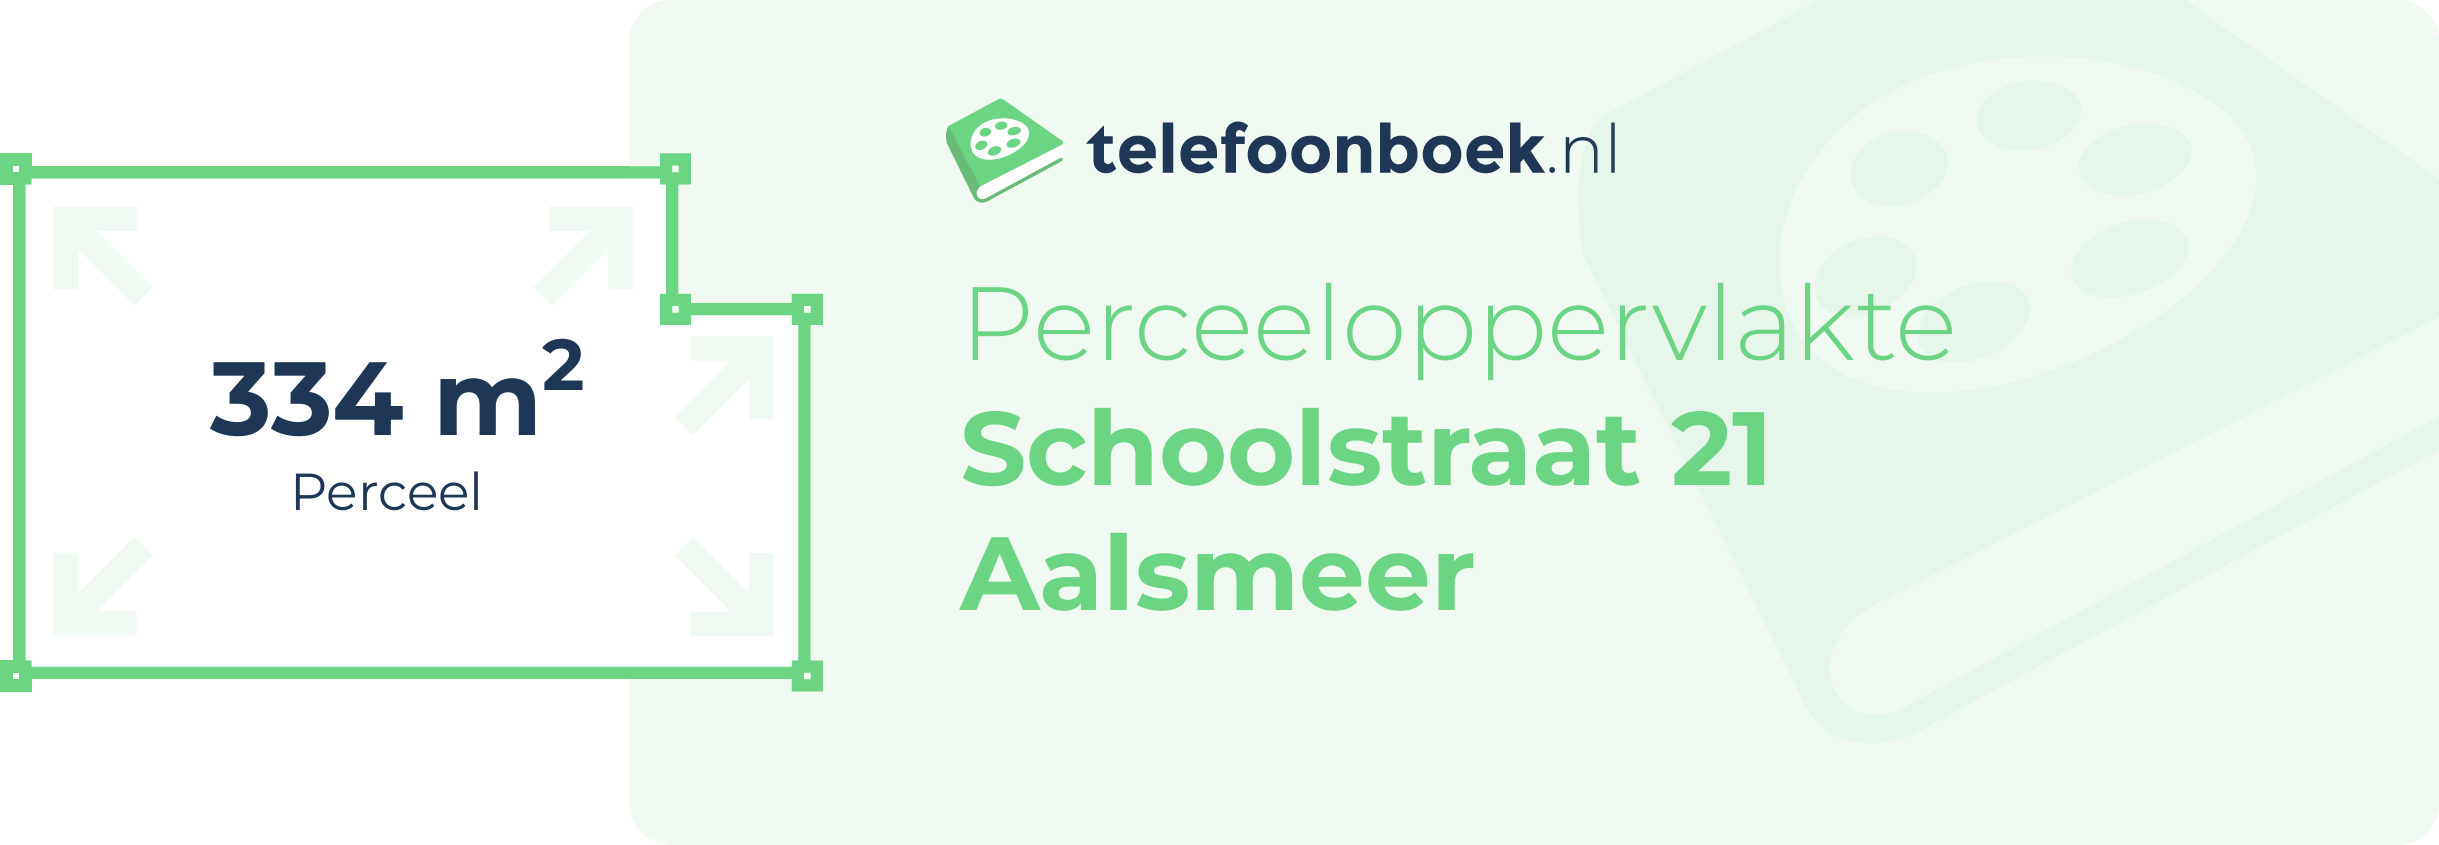 Perceeloppervlakte Schoolstraat 21 Aalsmeer